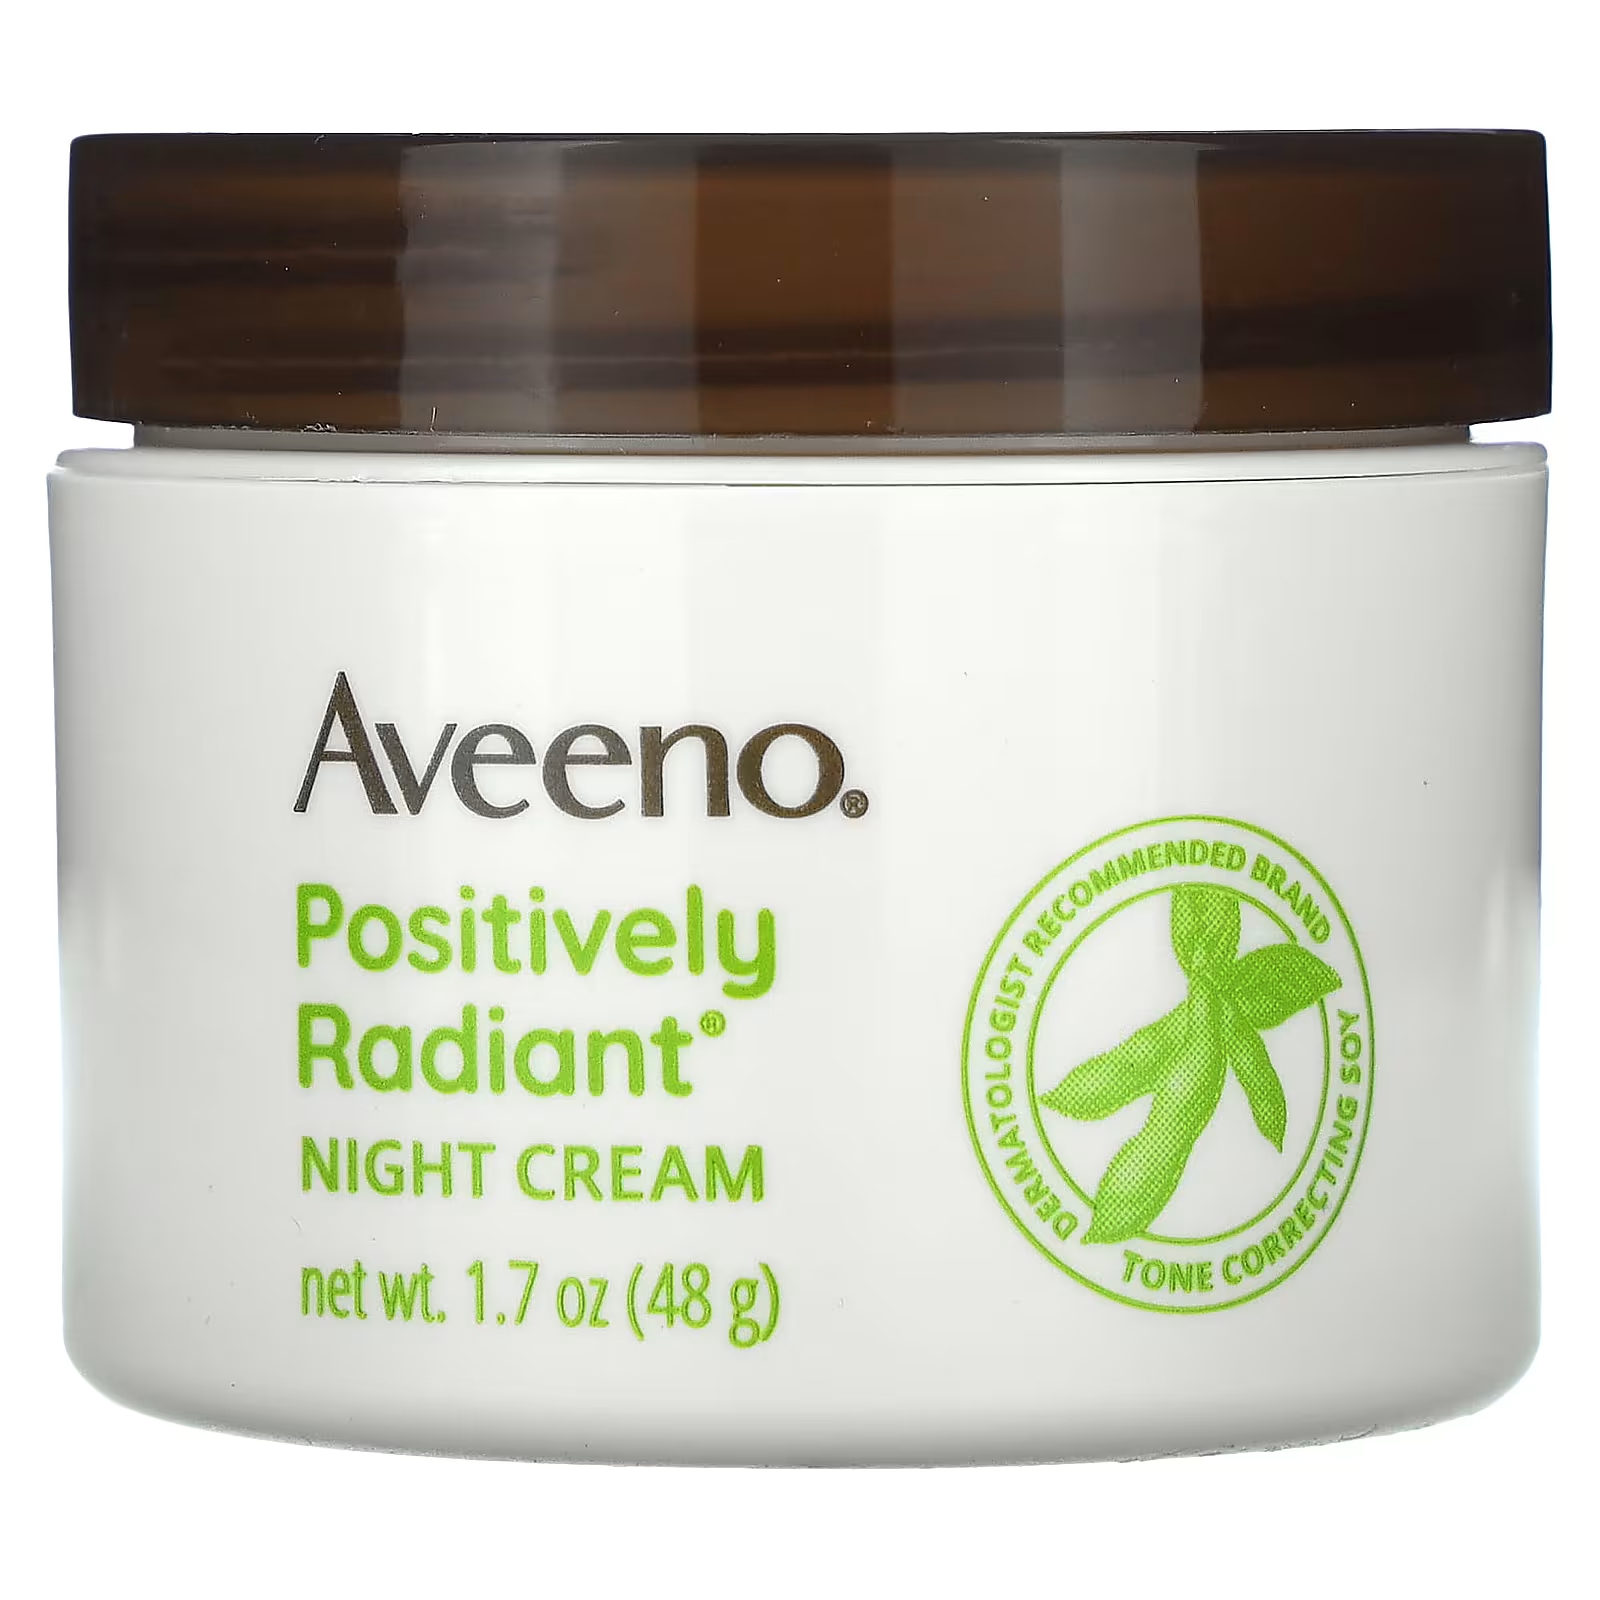 Aveeno Ночной крем с положительным сиянием, 1,7 унции (48 г) aveeno positively radiant интенсивный ночной крем 48 г 1 7 унции